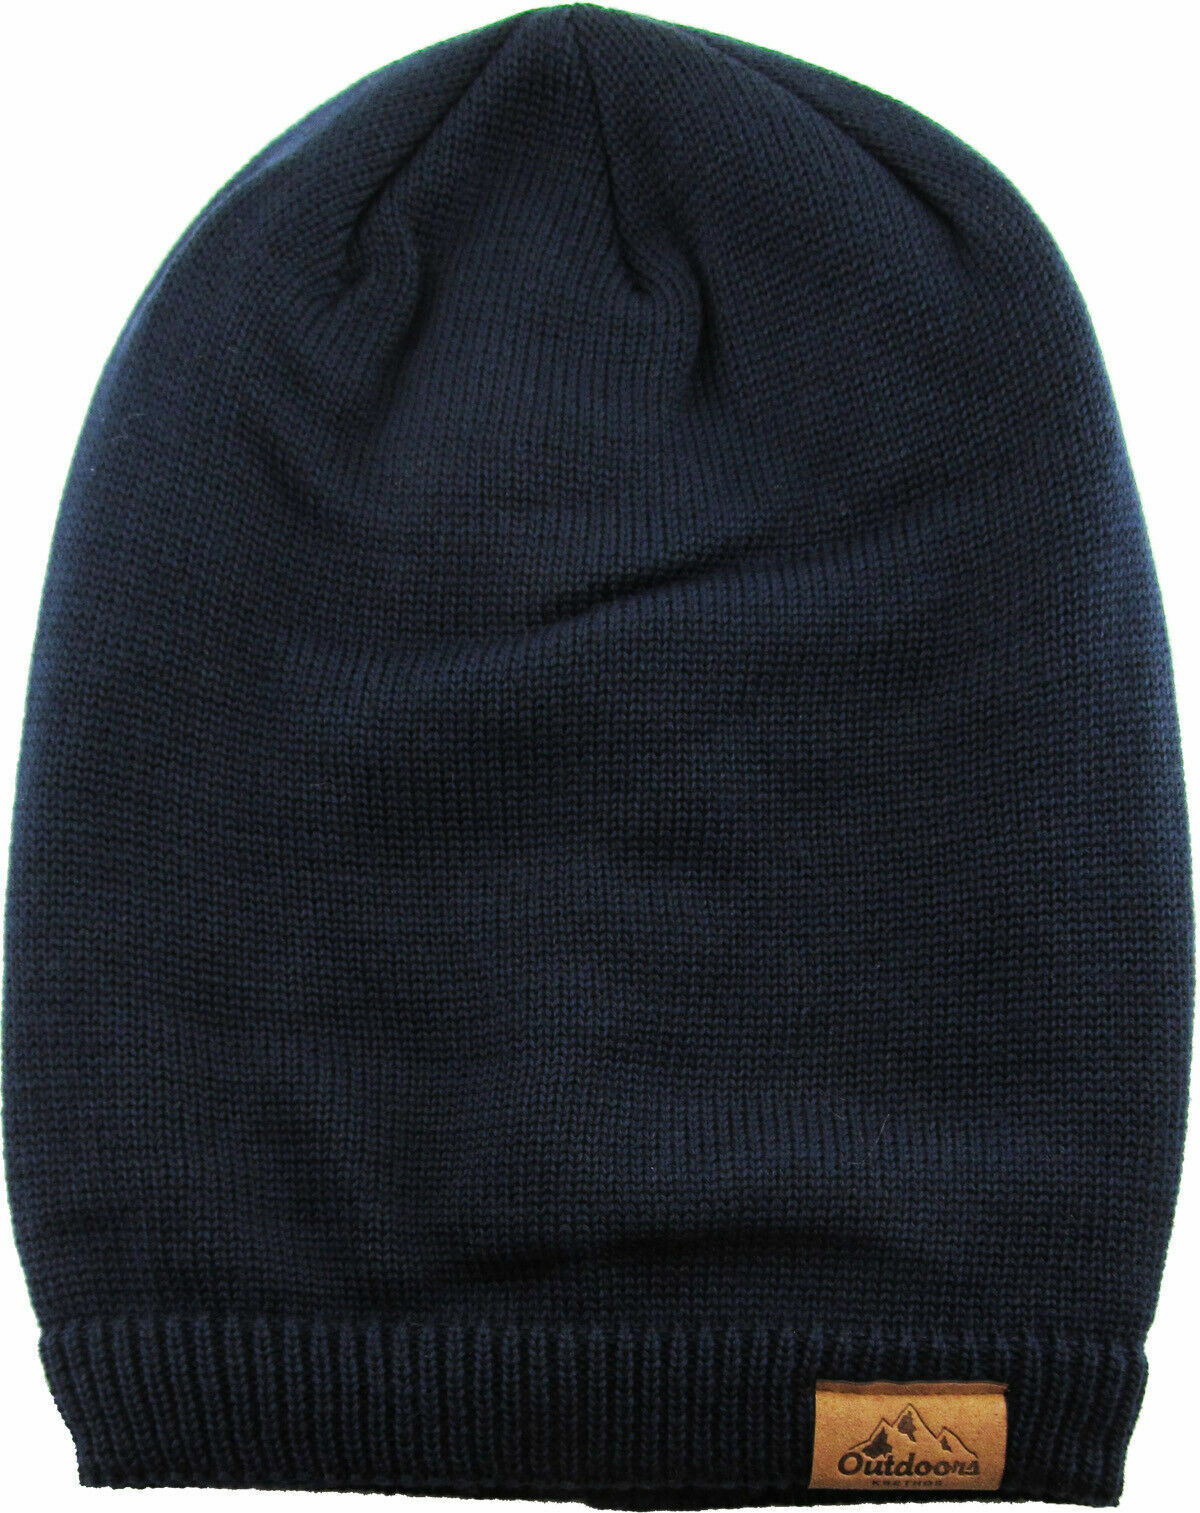 Slouch Baggy Beanie Navy Blue Watch Cap Sherpa Fleece Lined Ski Hat Knit Winter